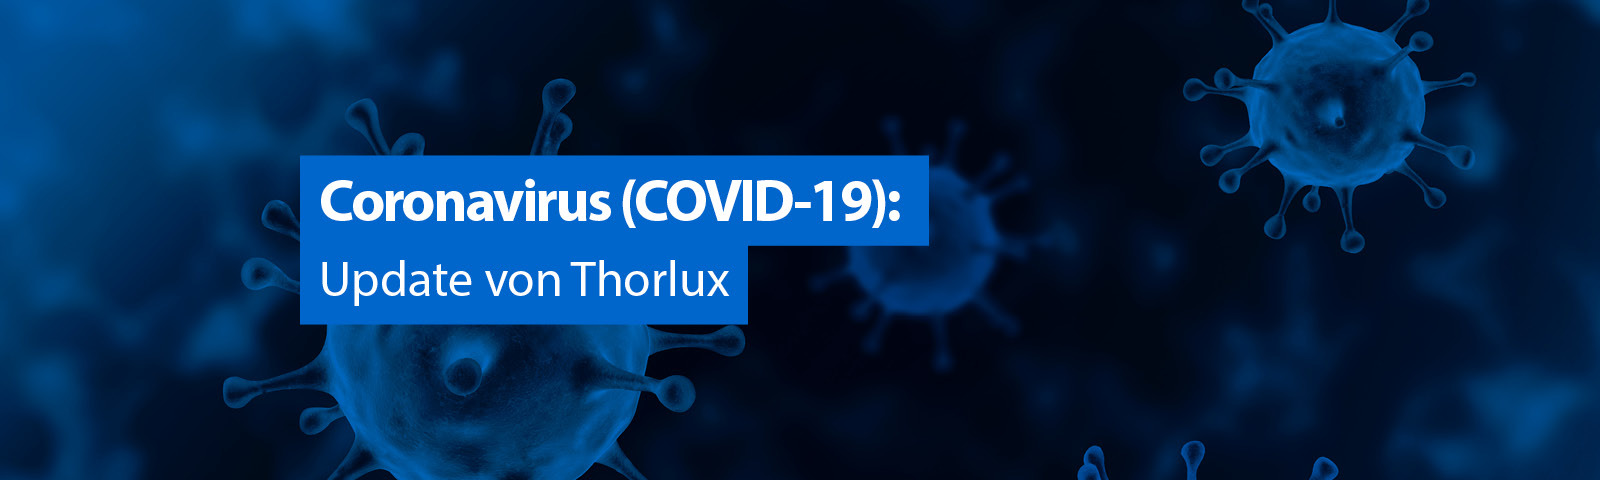 Coronavirus update von Thorlux